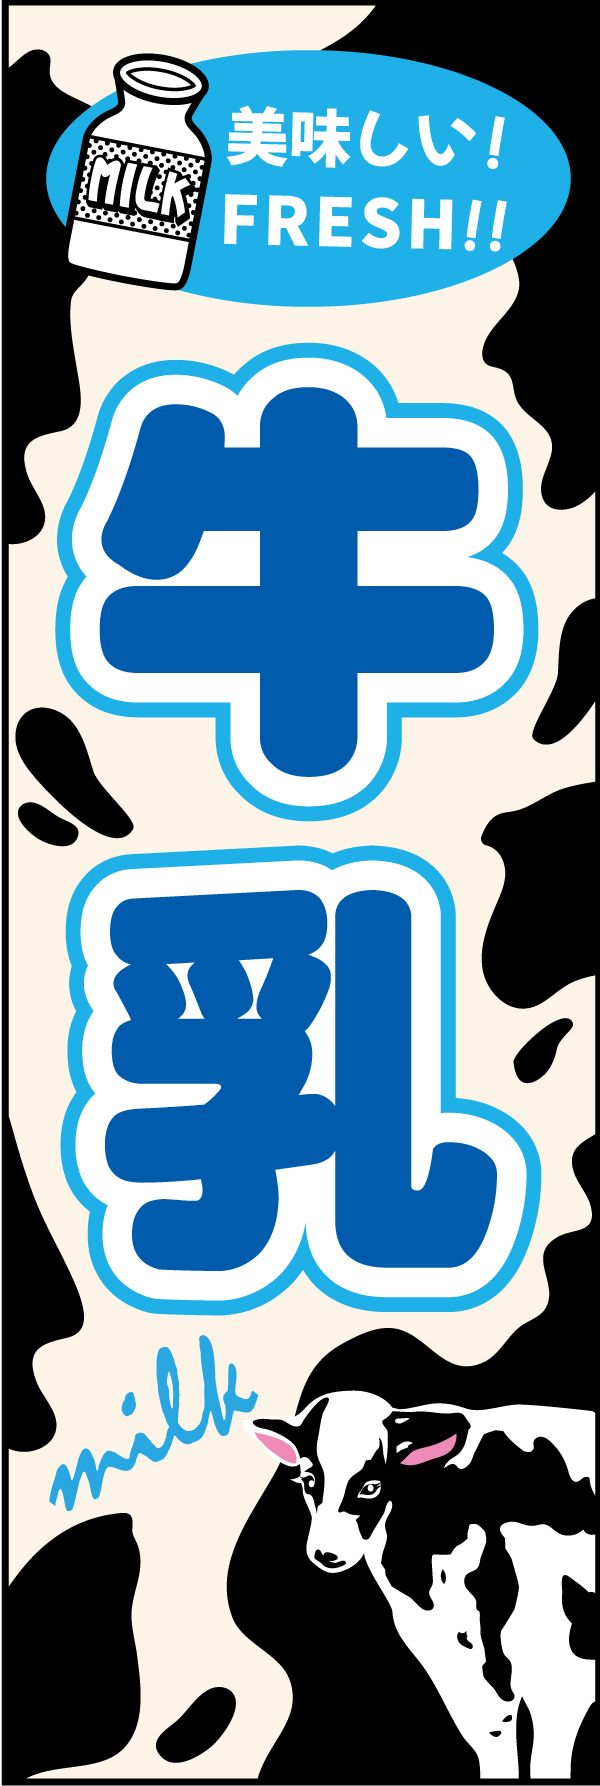 牛乳 4 牛をイメージしたモウモウ柄にイラスト使用でシンプルに目立つ「牛乳」幟です。文字も大きくてわかりやすいです。（M.H)